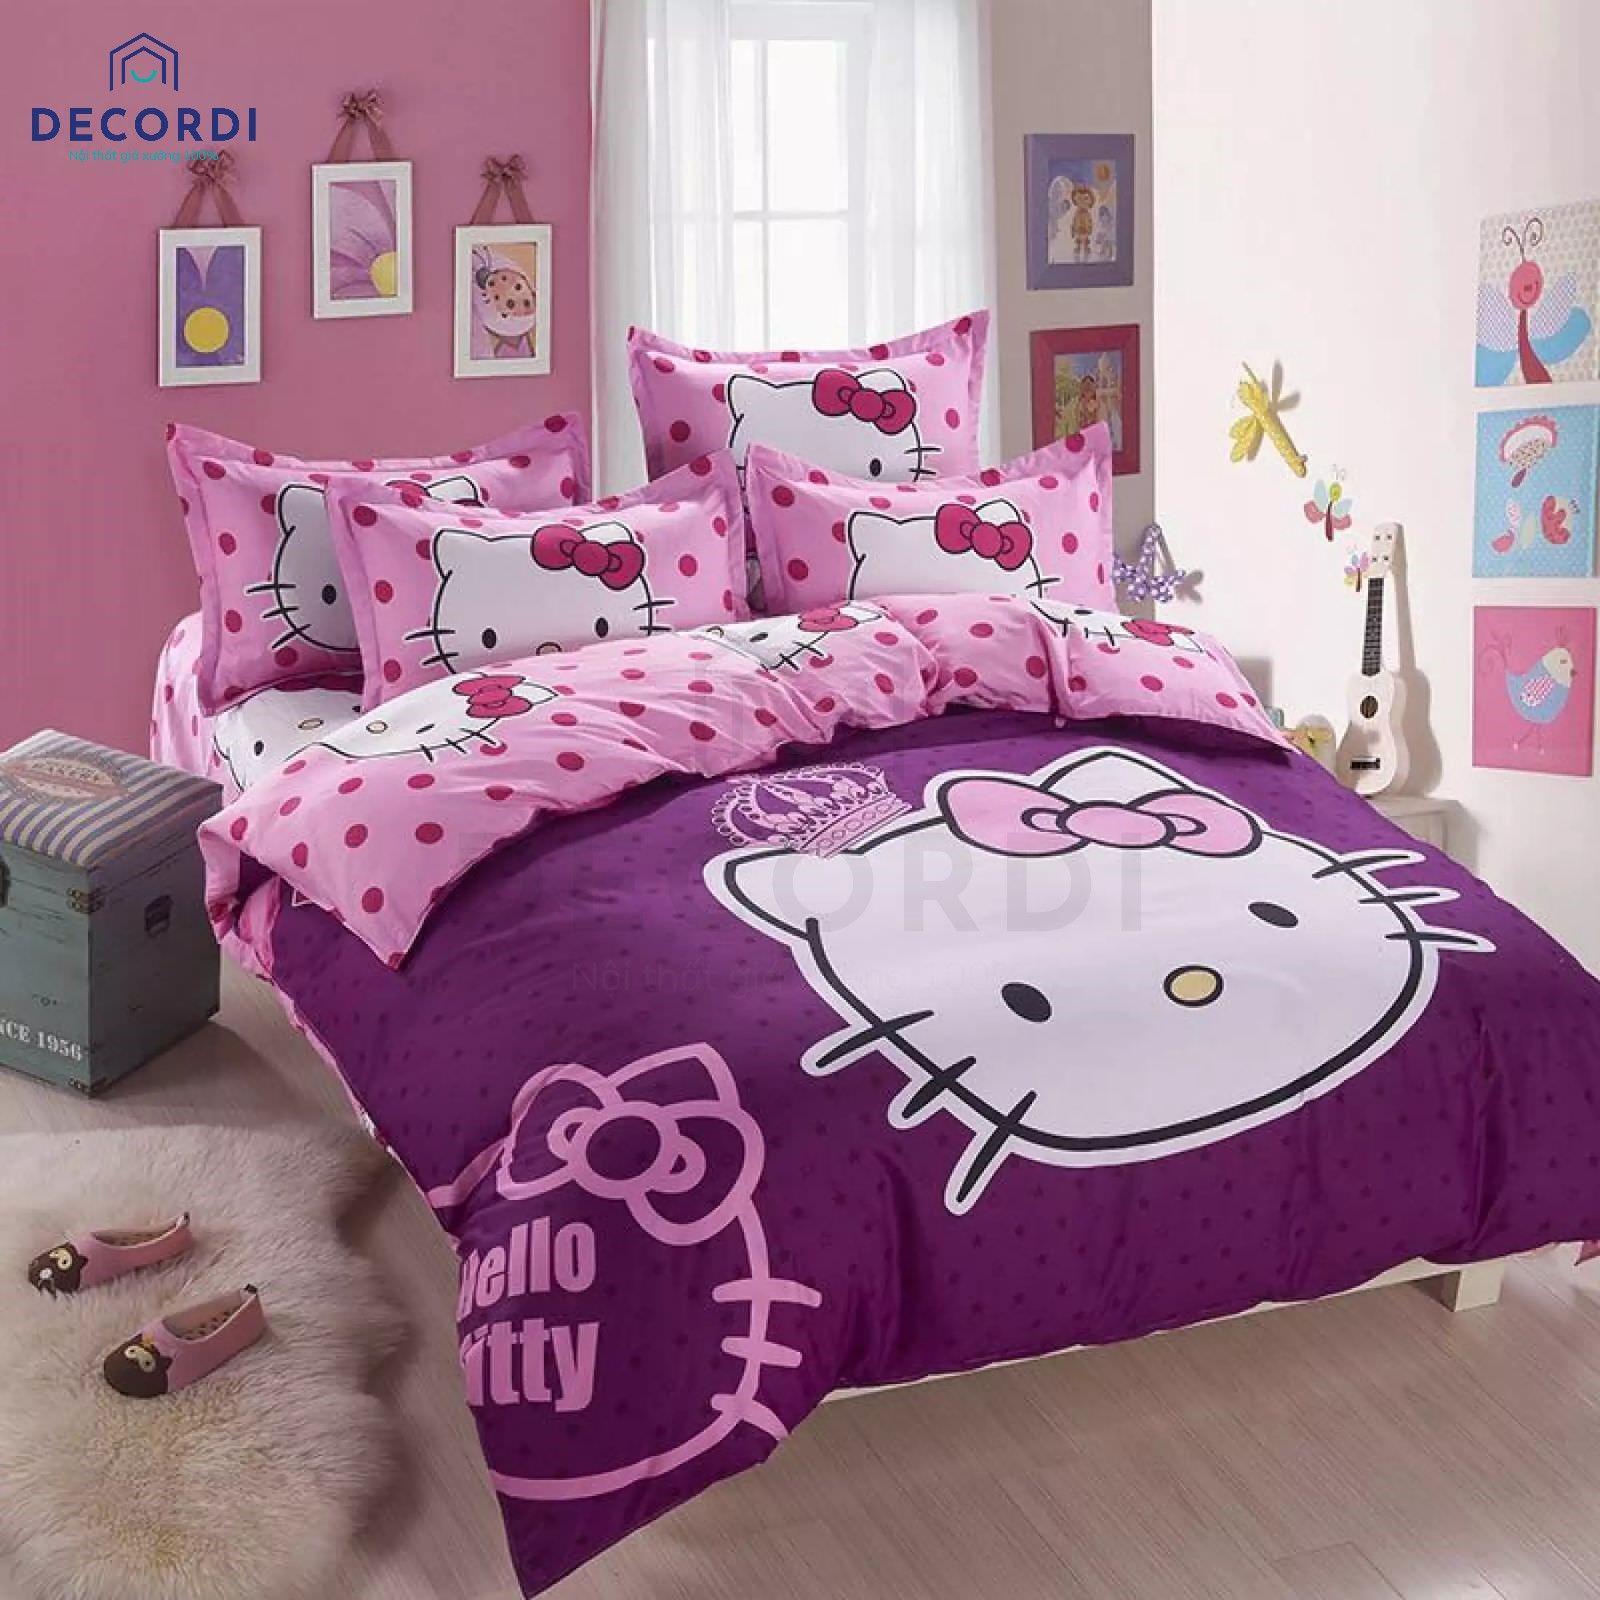 Trang trí phòng ngủ cho bạn gái với bộ ga giường hello kitty màu hồng và màu tím, bạn có thể sử dụng cả 2 mặt đều được